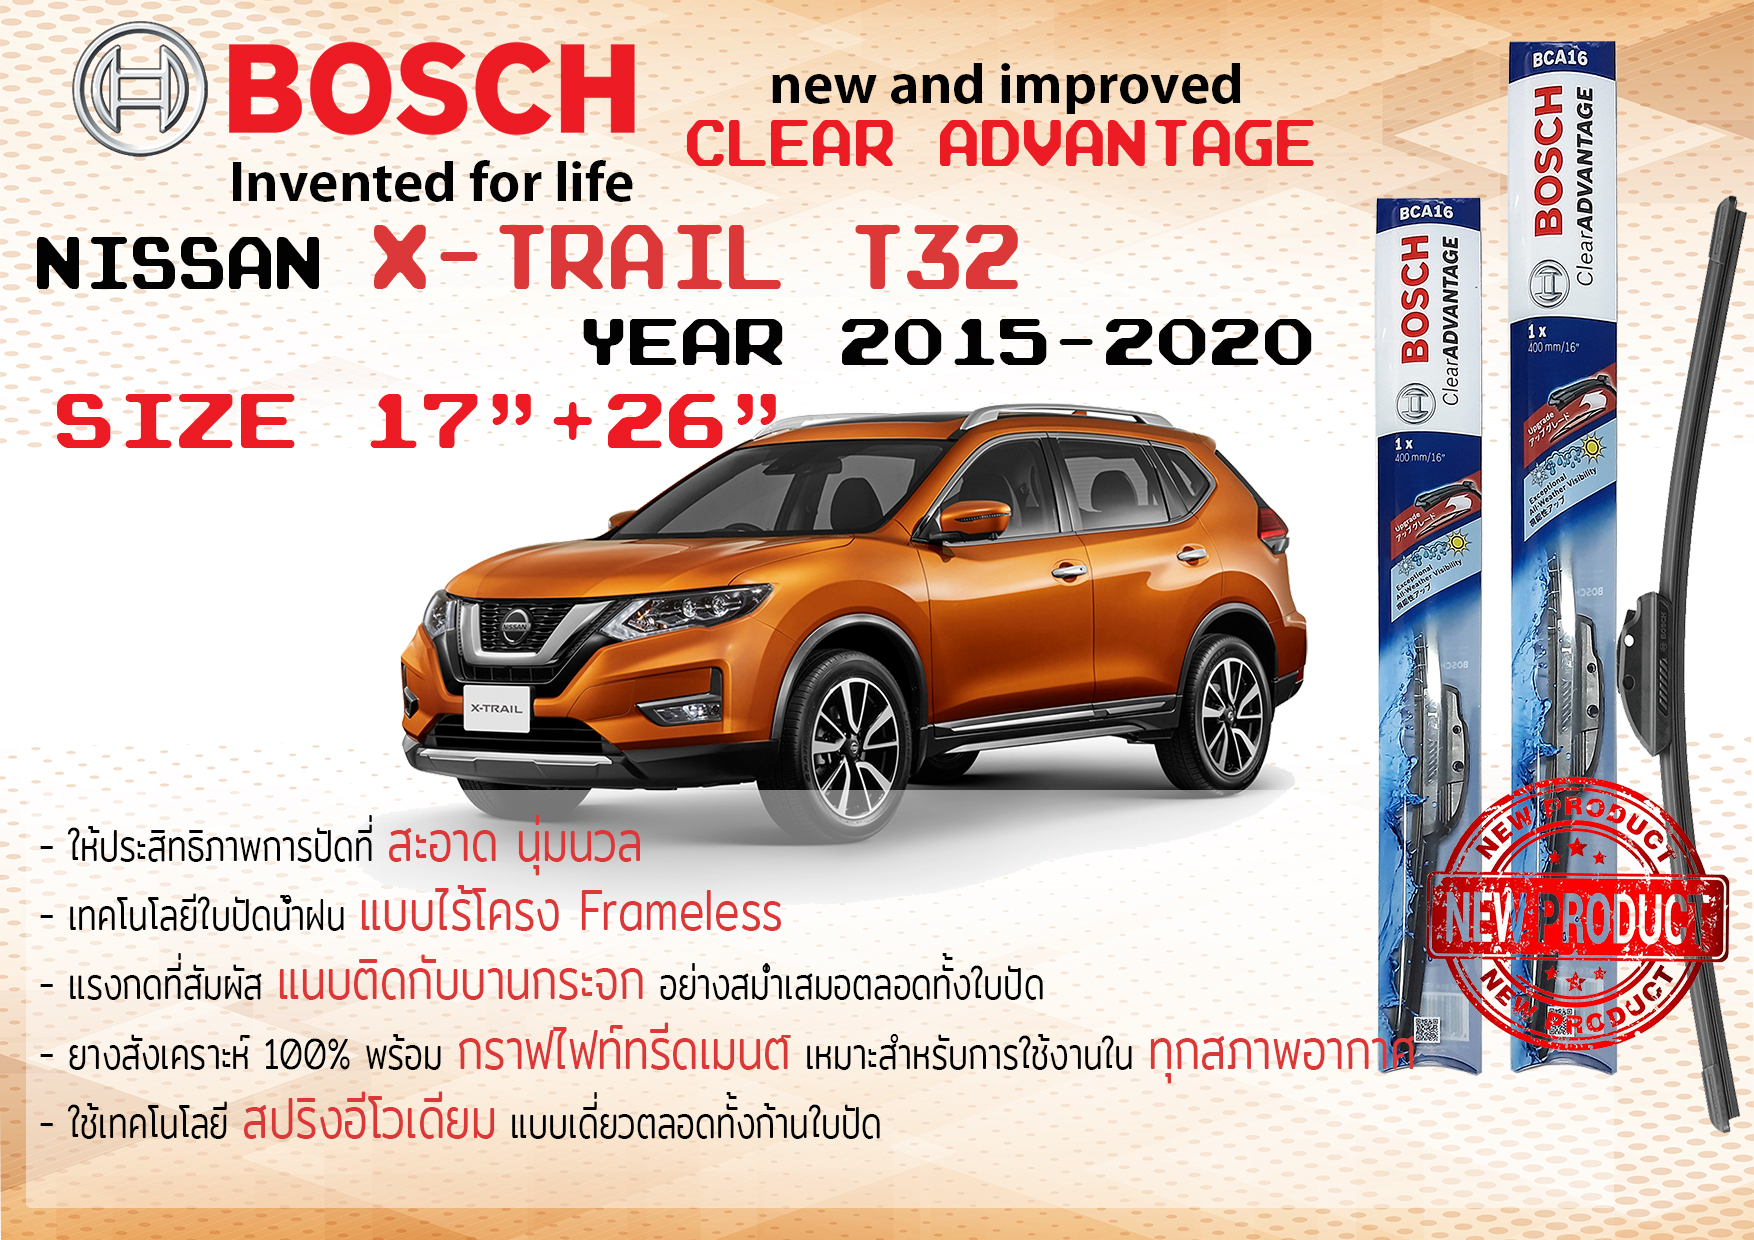 ใบปัดน้ำฝน คู่หน้า Bosch Clear Advantage frameless ก้านอ่อน ขนาด 17”+26” สำหรับรถ Nissan X-TRAIL,XTRAIL T32 ปี 2015-2020 ปี 15,16,17,18,19,20 นิสสัน เอ็กซ์เทรล ทนแสง UV